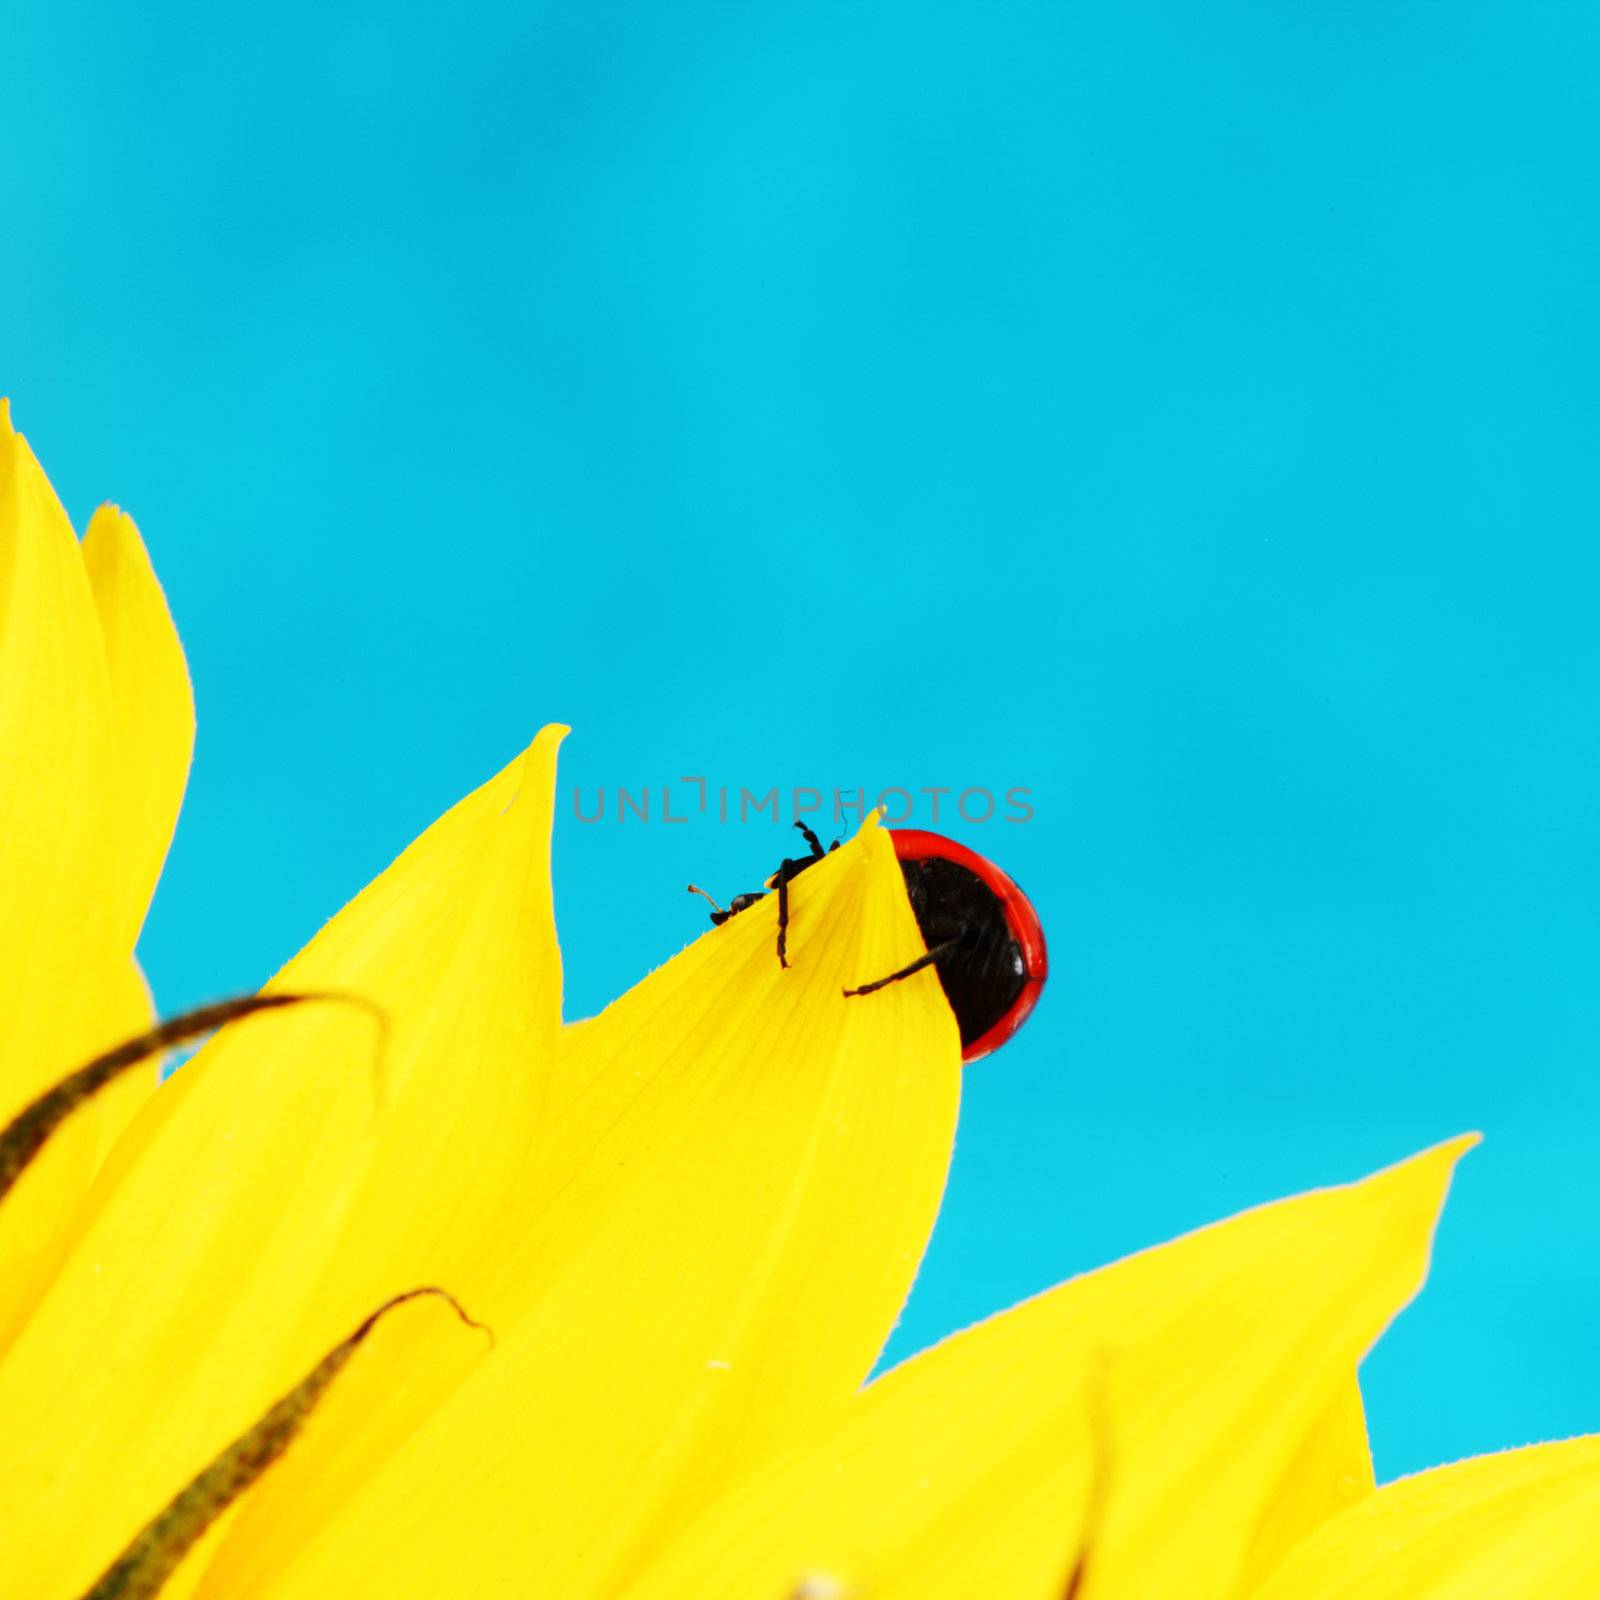 ladybug on sunflower blue background